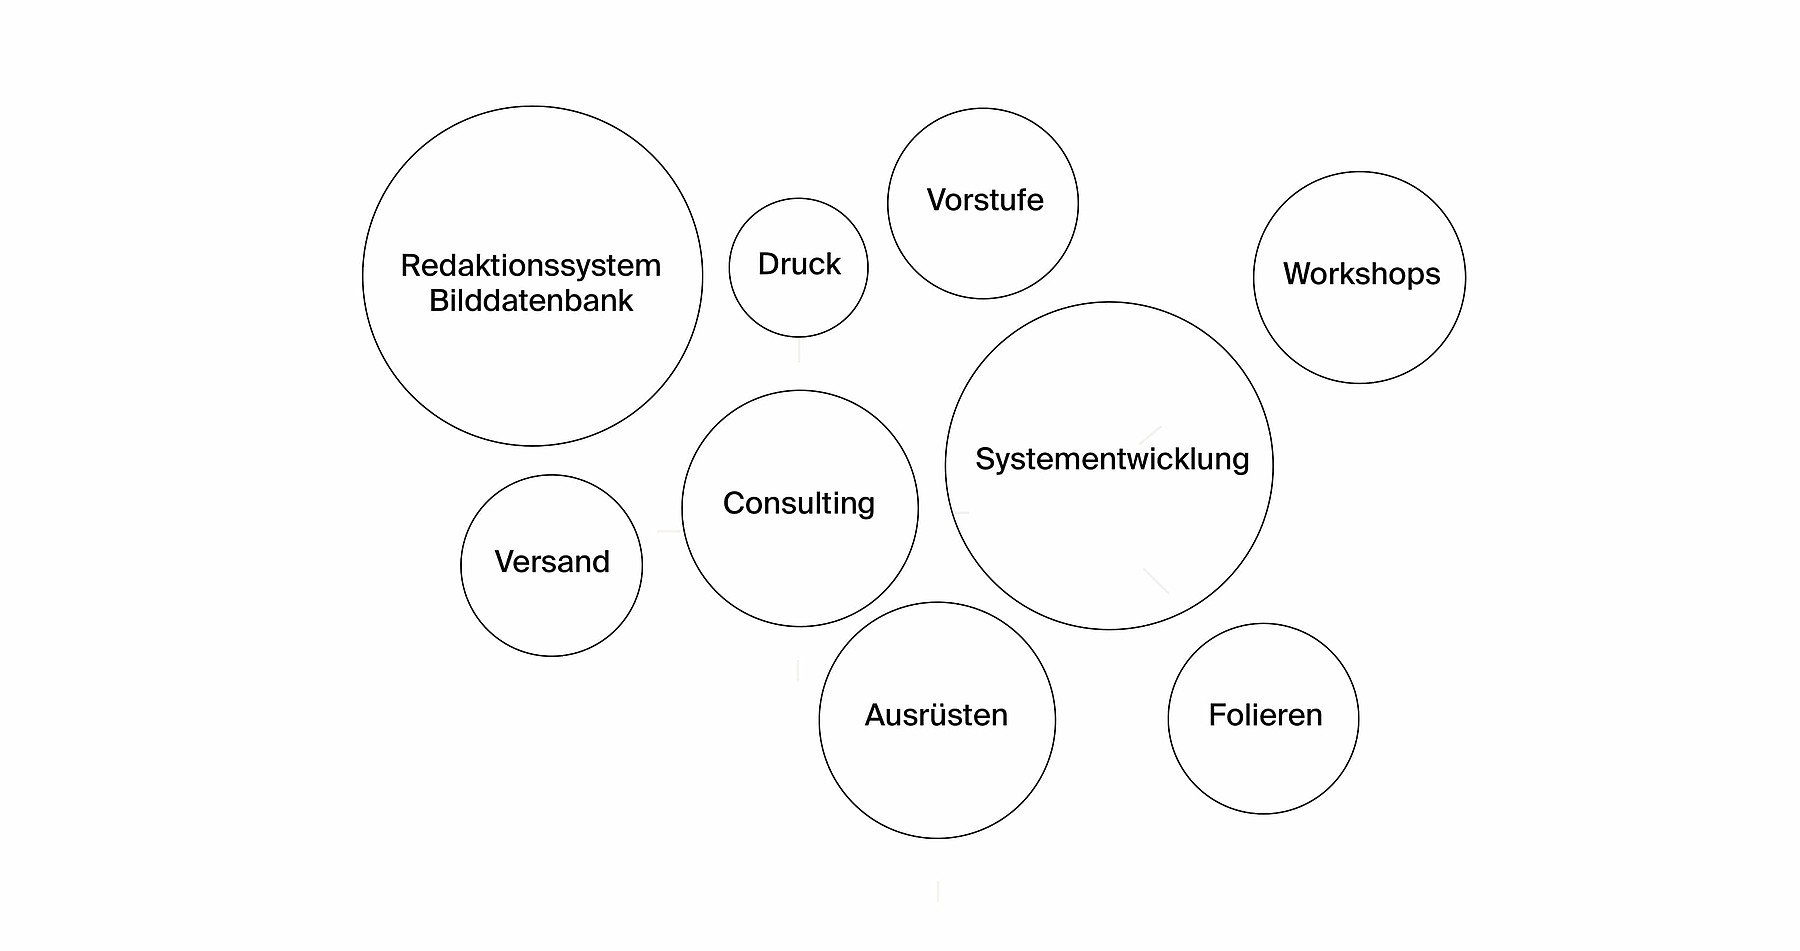 Die Leistungen, die Stämpfli Kommunikation für Docu Media Schweiz erbringt, dargestellt in Kreisen unterschiedlicher Grösse: Redaktionssystem und Bilddatenbank, Systementwicklung, Consulting, Ausrüsten, Workshops, Vorstufe, Folieren, Versand, Druck